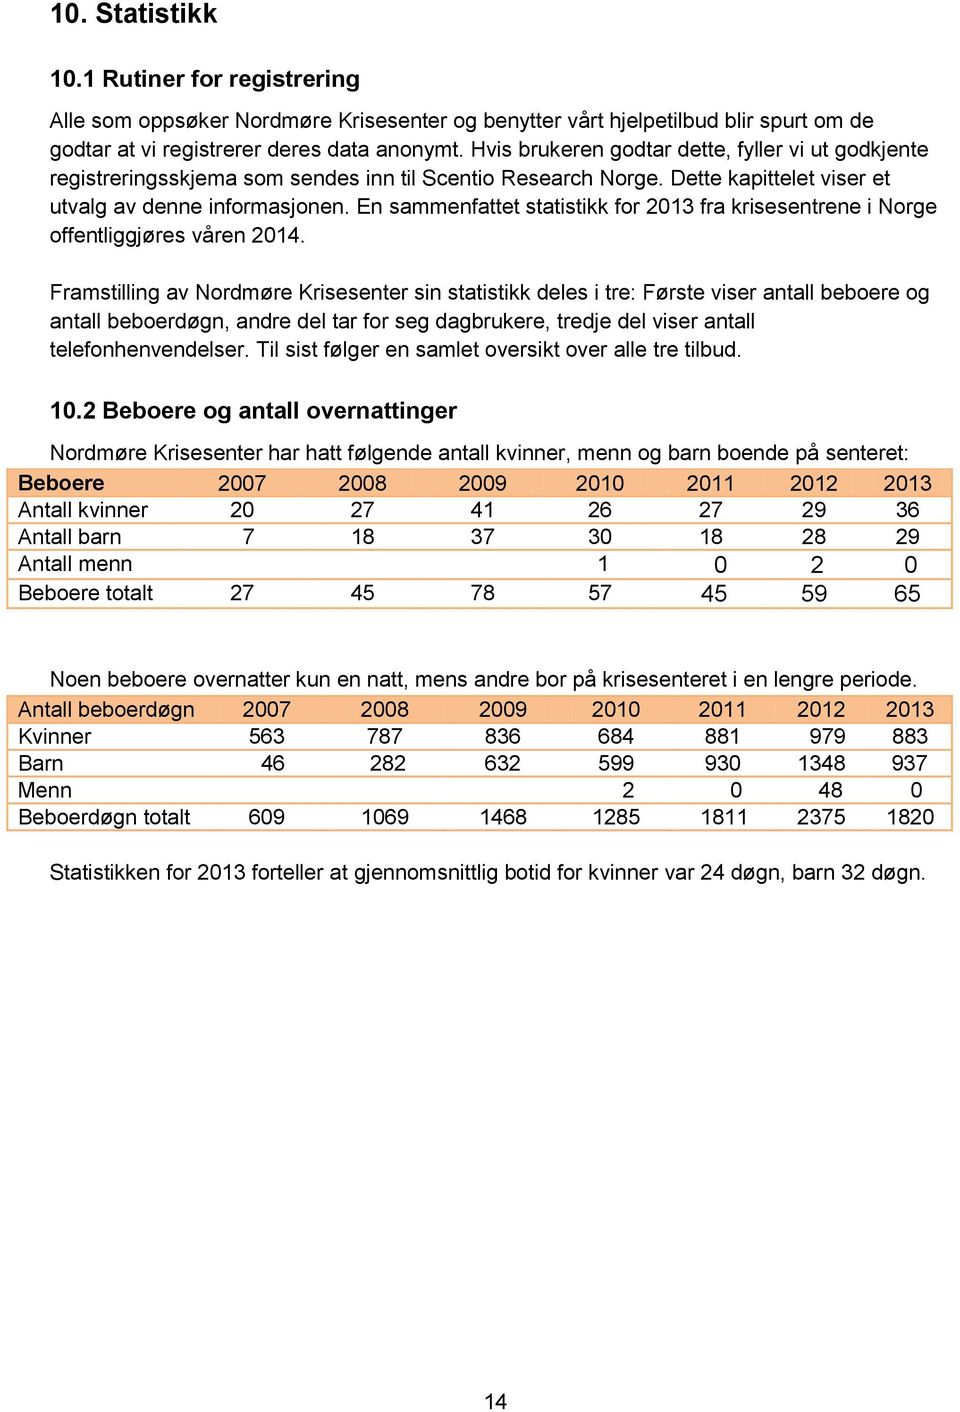 En sammenfattet statistikk for 2013 fra krisesentrene i Norge offentliggjøres våren 2014.